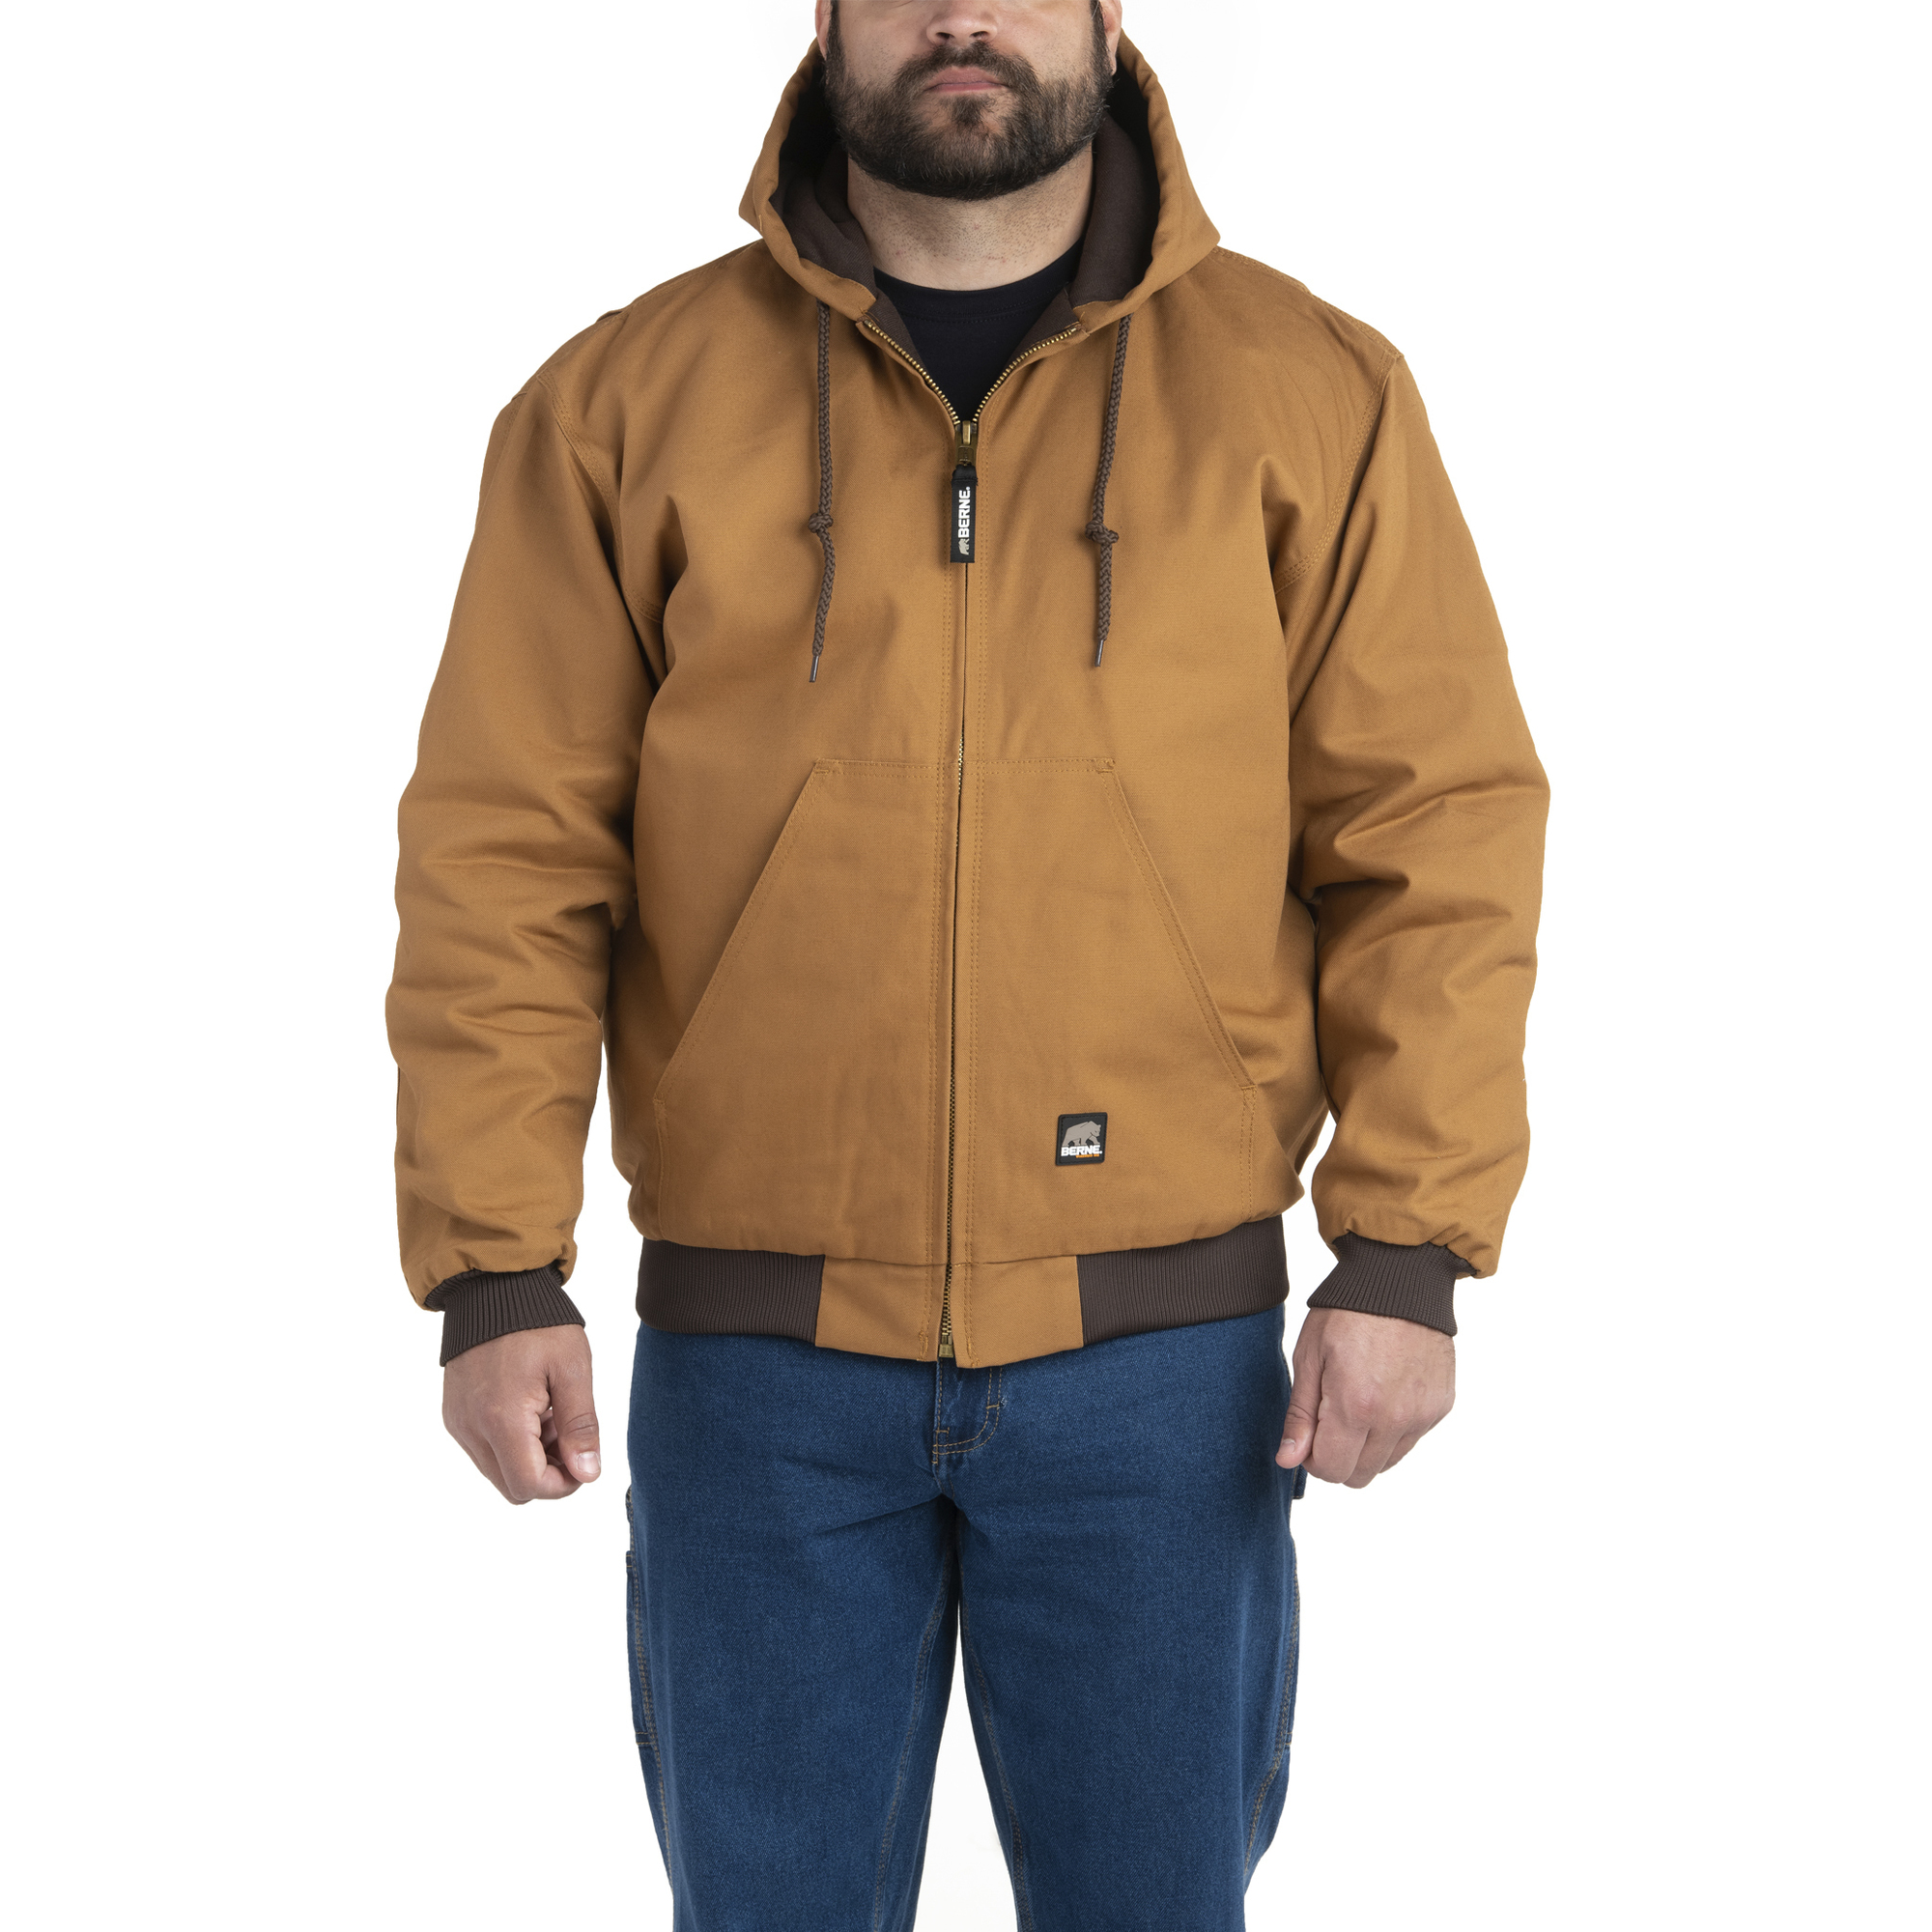 Berne Apparel, Heritage Hooded Jacket, Size XS, Color Brown Duck, Model HJ51